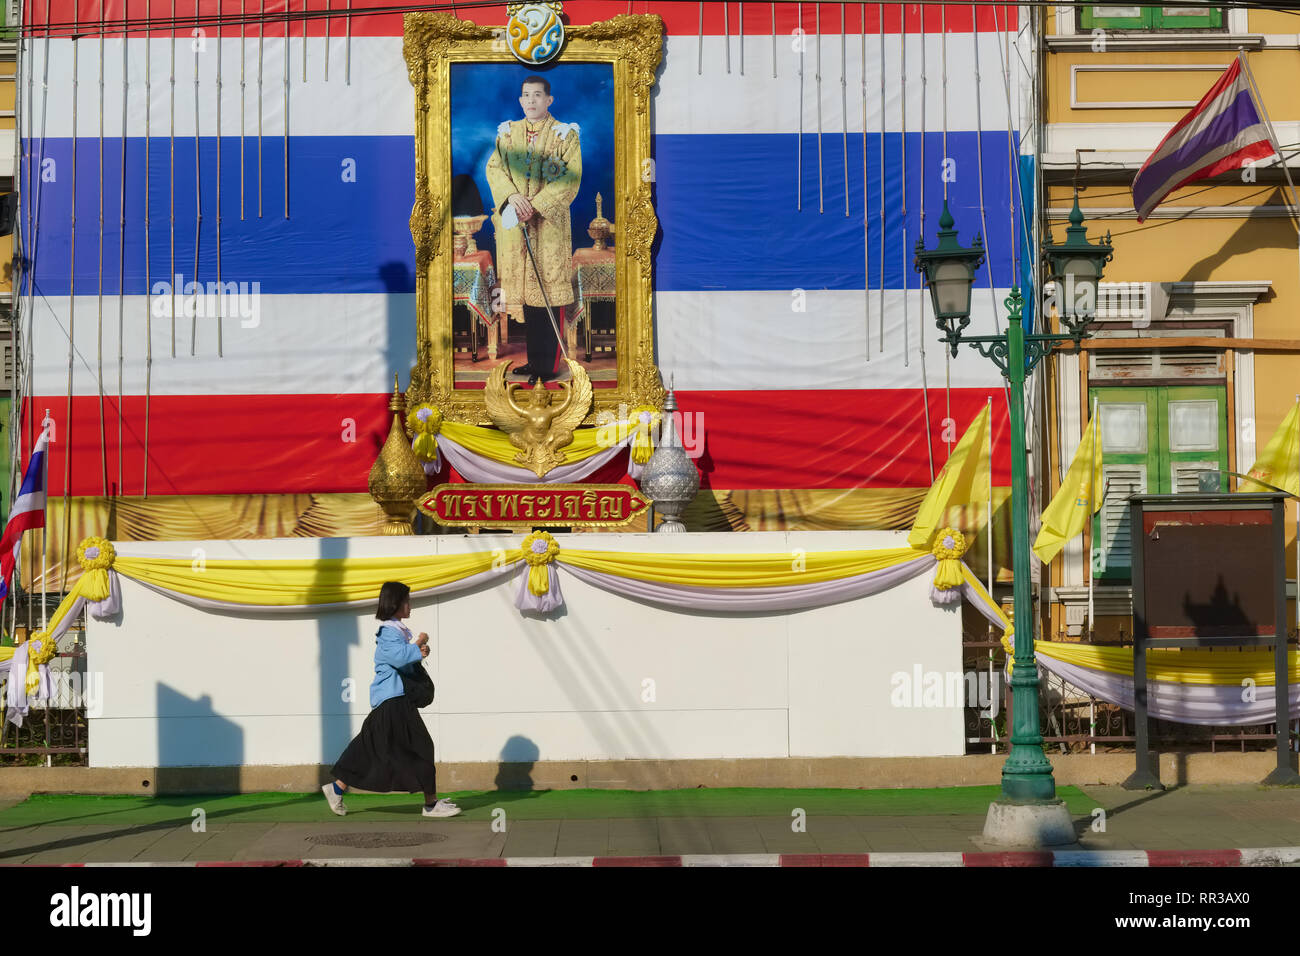 Une écolière à Bangkok, Thaïlande, passe sous un portrait du roi Maha Vajiralongkorn, Rama X., défini dans un pavillon thaï géant Banque D'Images